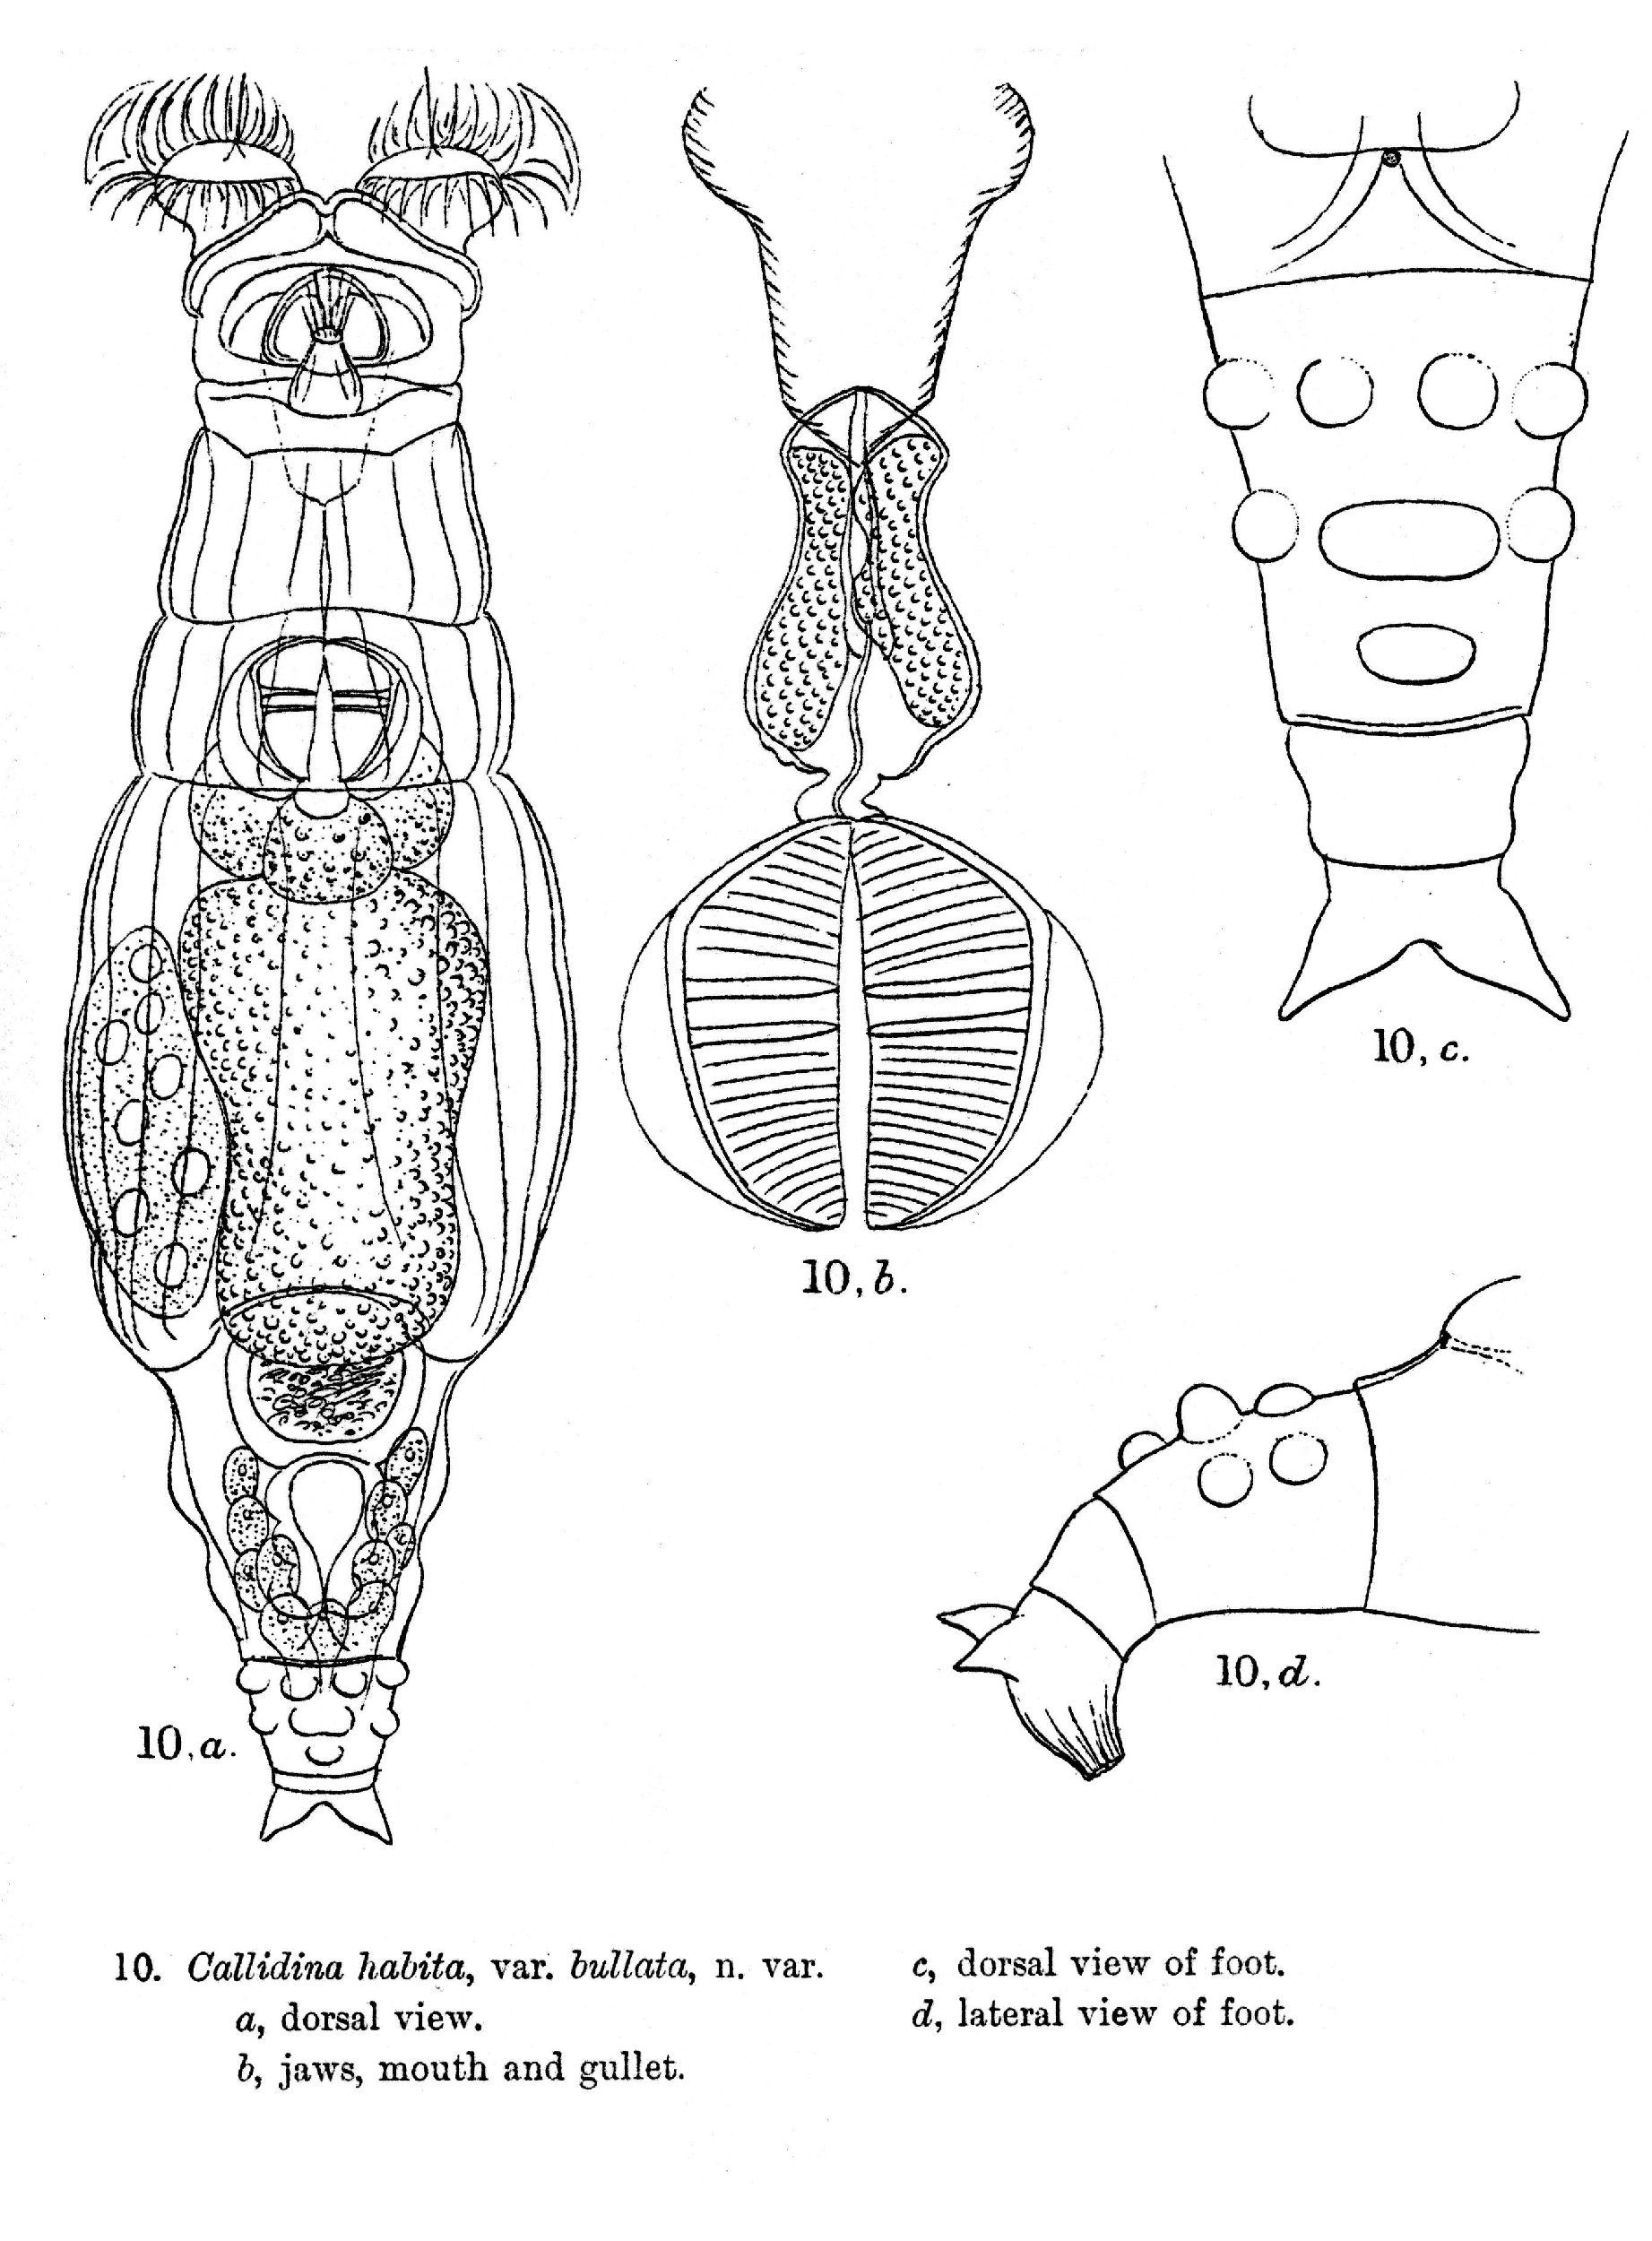 Image of Macrotrachela bullata (Murray 1906)